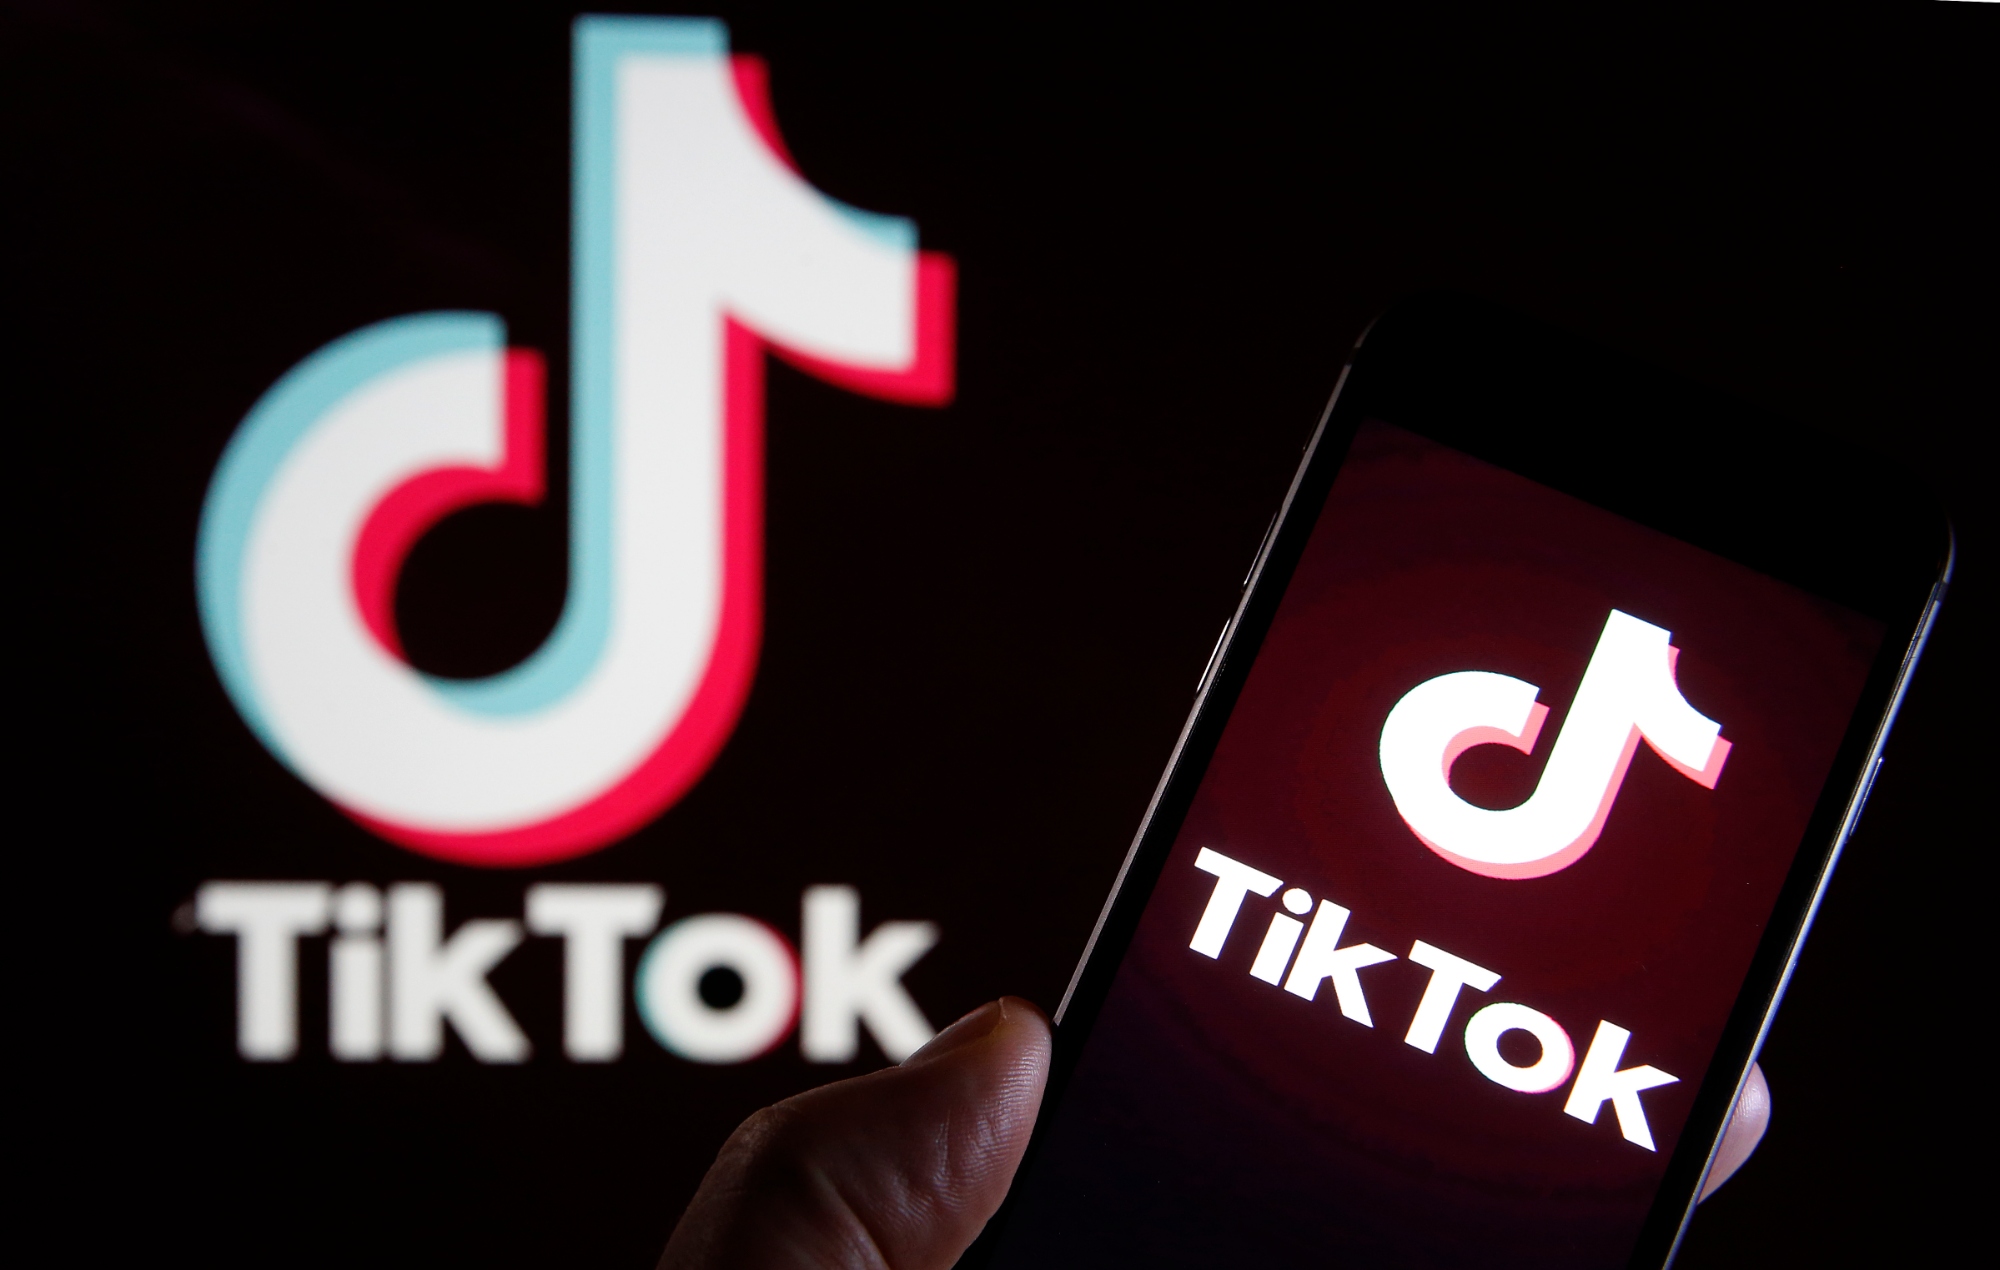 Donald Trump da la "bendición" de hacer un trato para que TikTok siga operando en EE.UU.